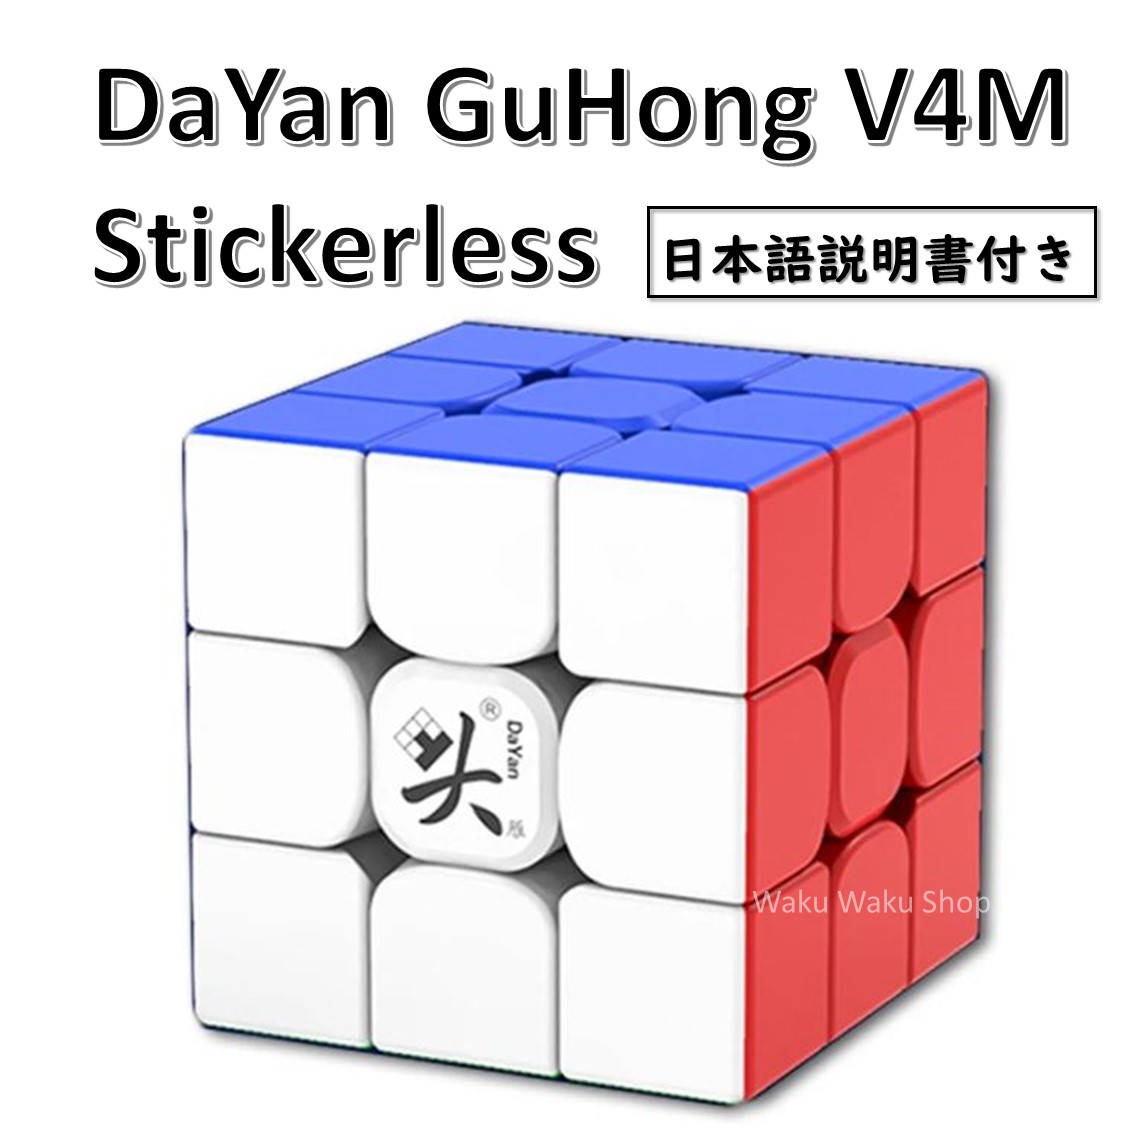    DaYan GuHong V4M 磁石搭載 3x3x3キューブ ステッカーレス ルービックキューブ おすすめ なめらか